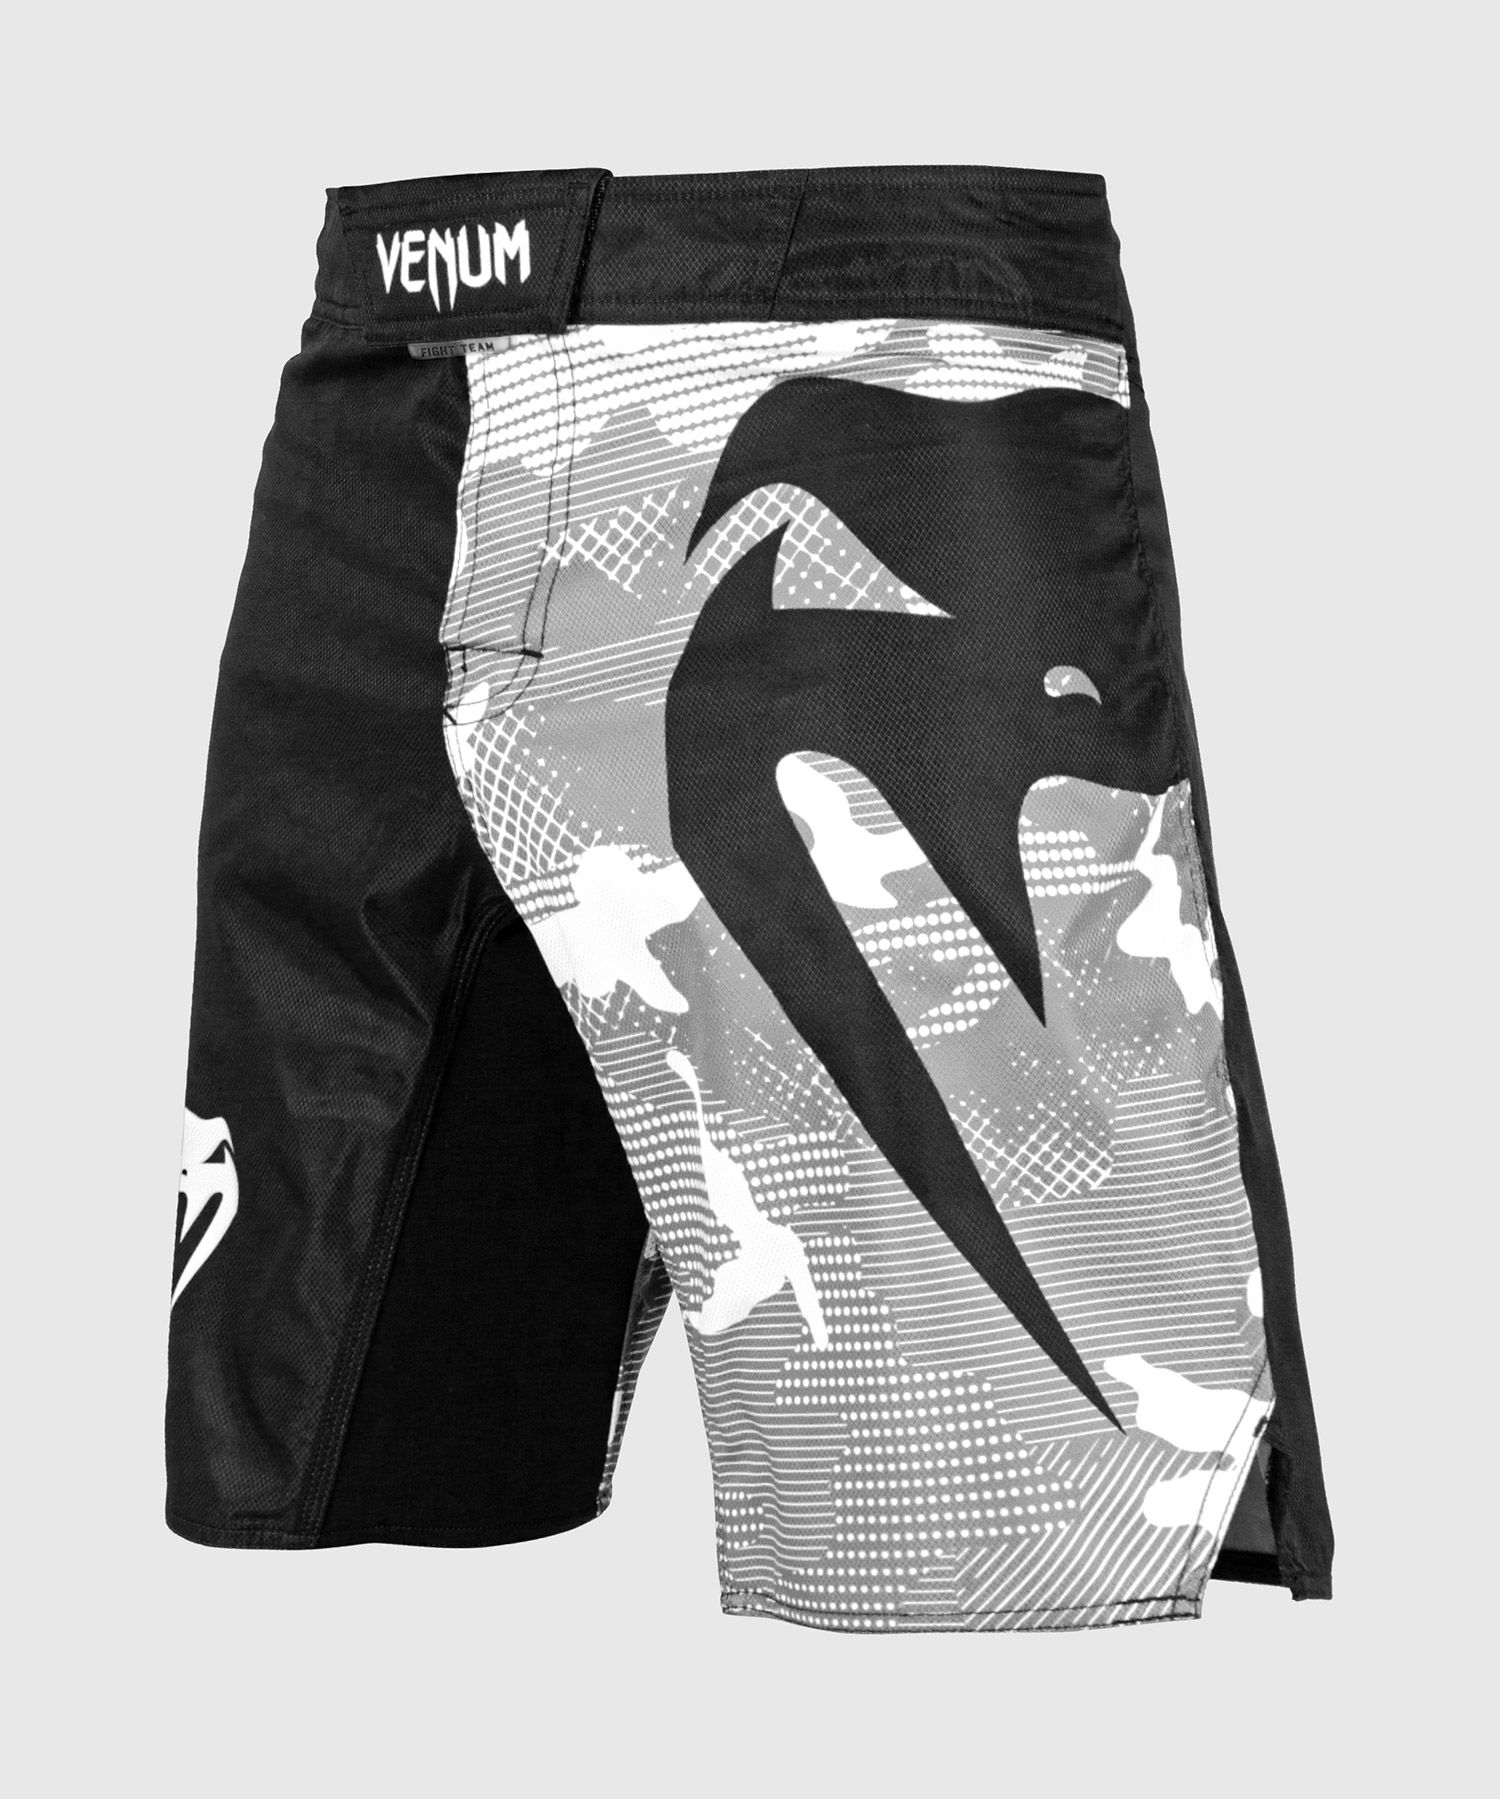 男裝搏击短裤 - Venum 亚洲 - Venum毒液中国官方网站